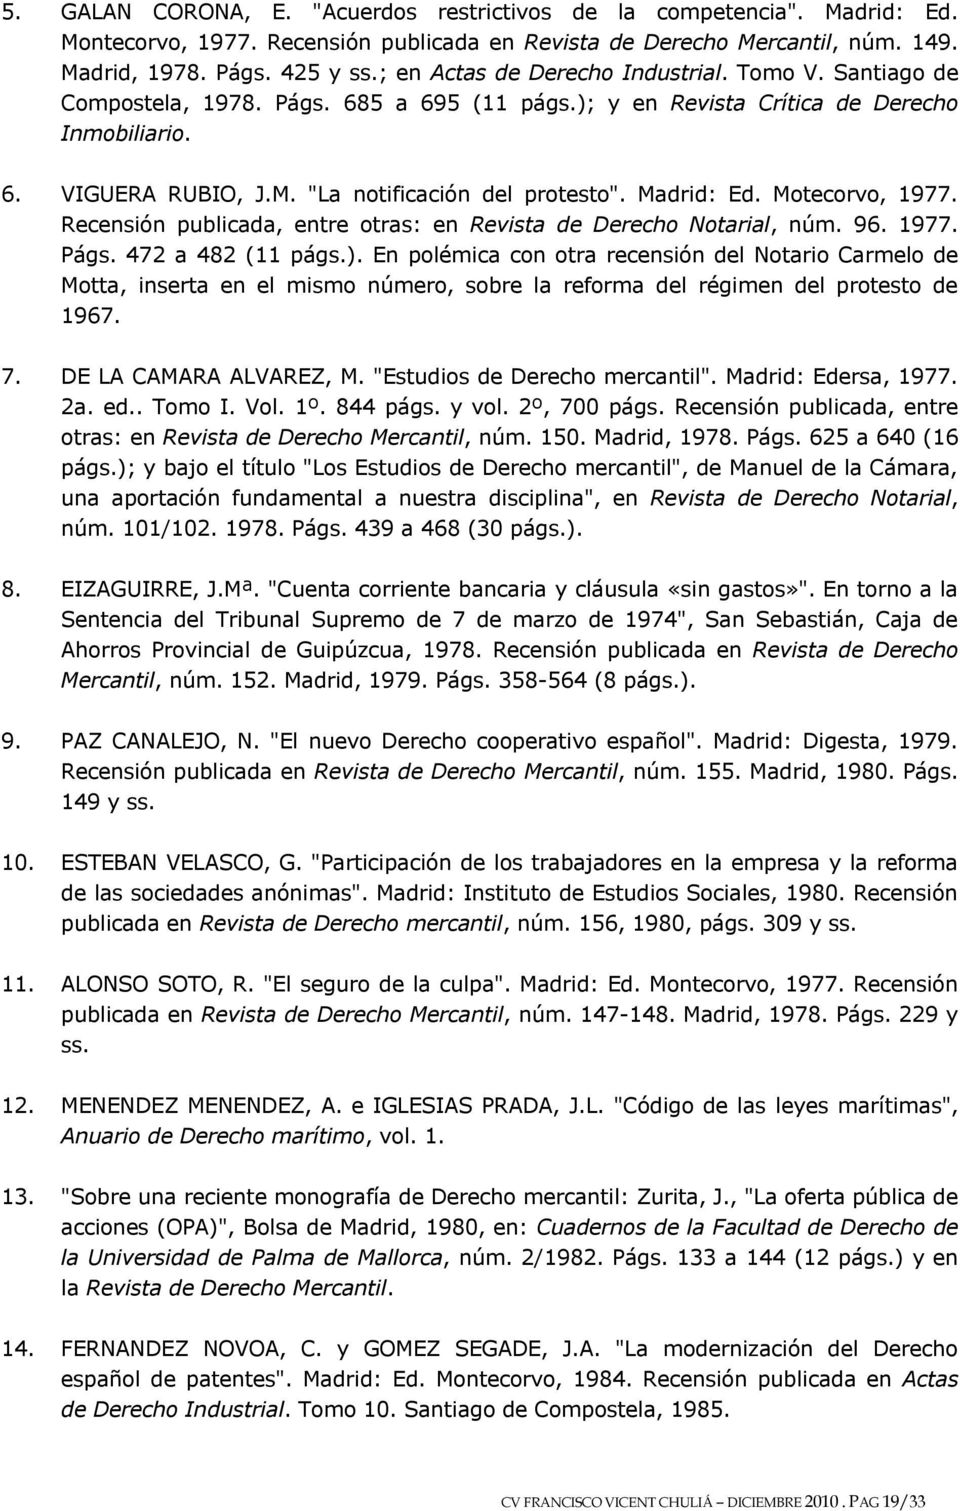 Madrid: Ed. Motecorvo, 1977. Recensión publicada, entre otras: en Revista de Derecho Notarial, núm. 96. 1977. Págs. 472 a 482 (11 págs.).